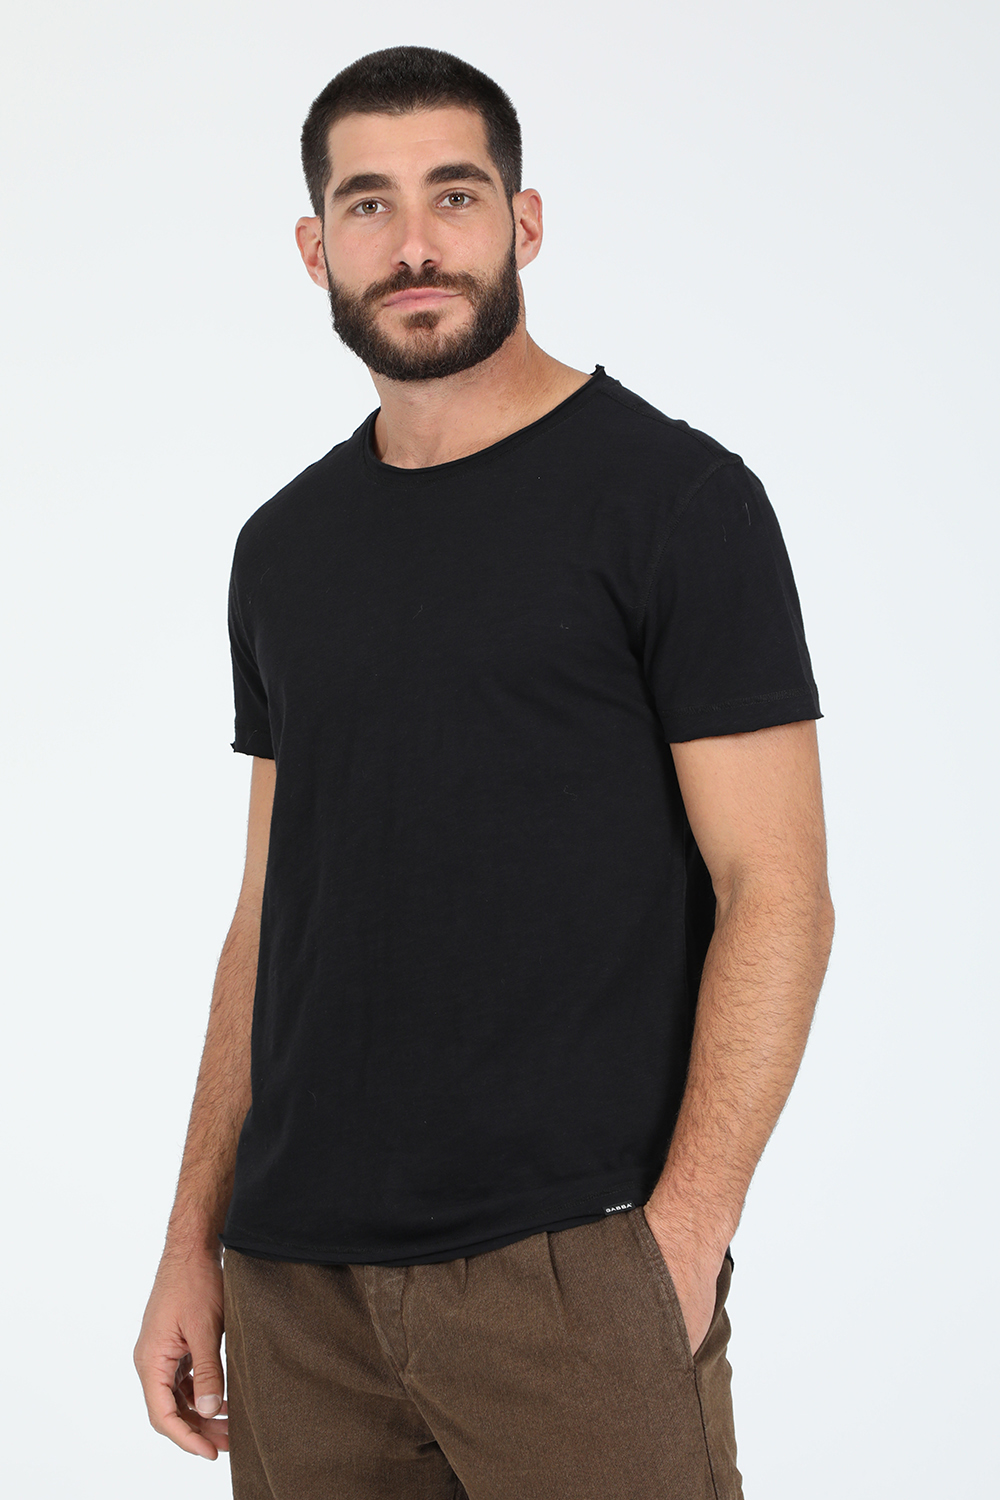 Ανδρικά/Ρούχα/Μπλούζες/Κοντομάνικες GABBA - Ανδρική μπλούζα GABBA Konrad Slub S/S Tee μαύρη